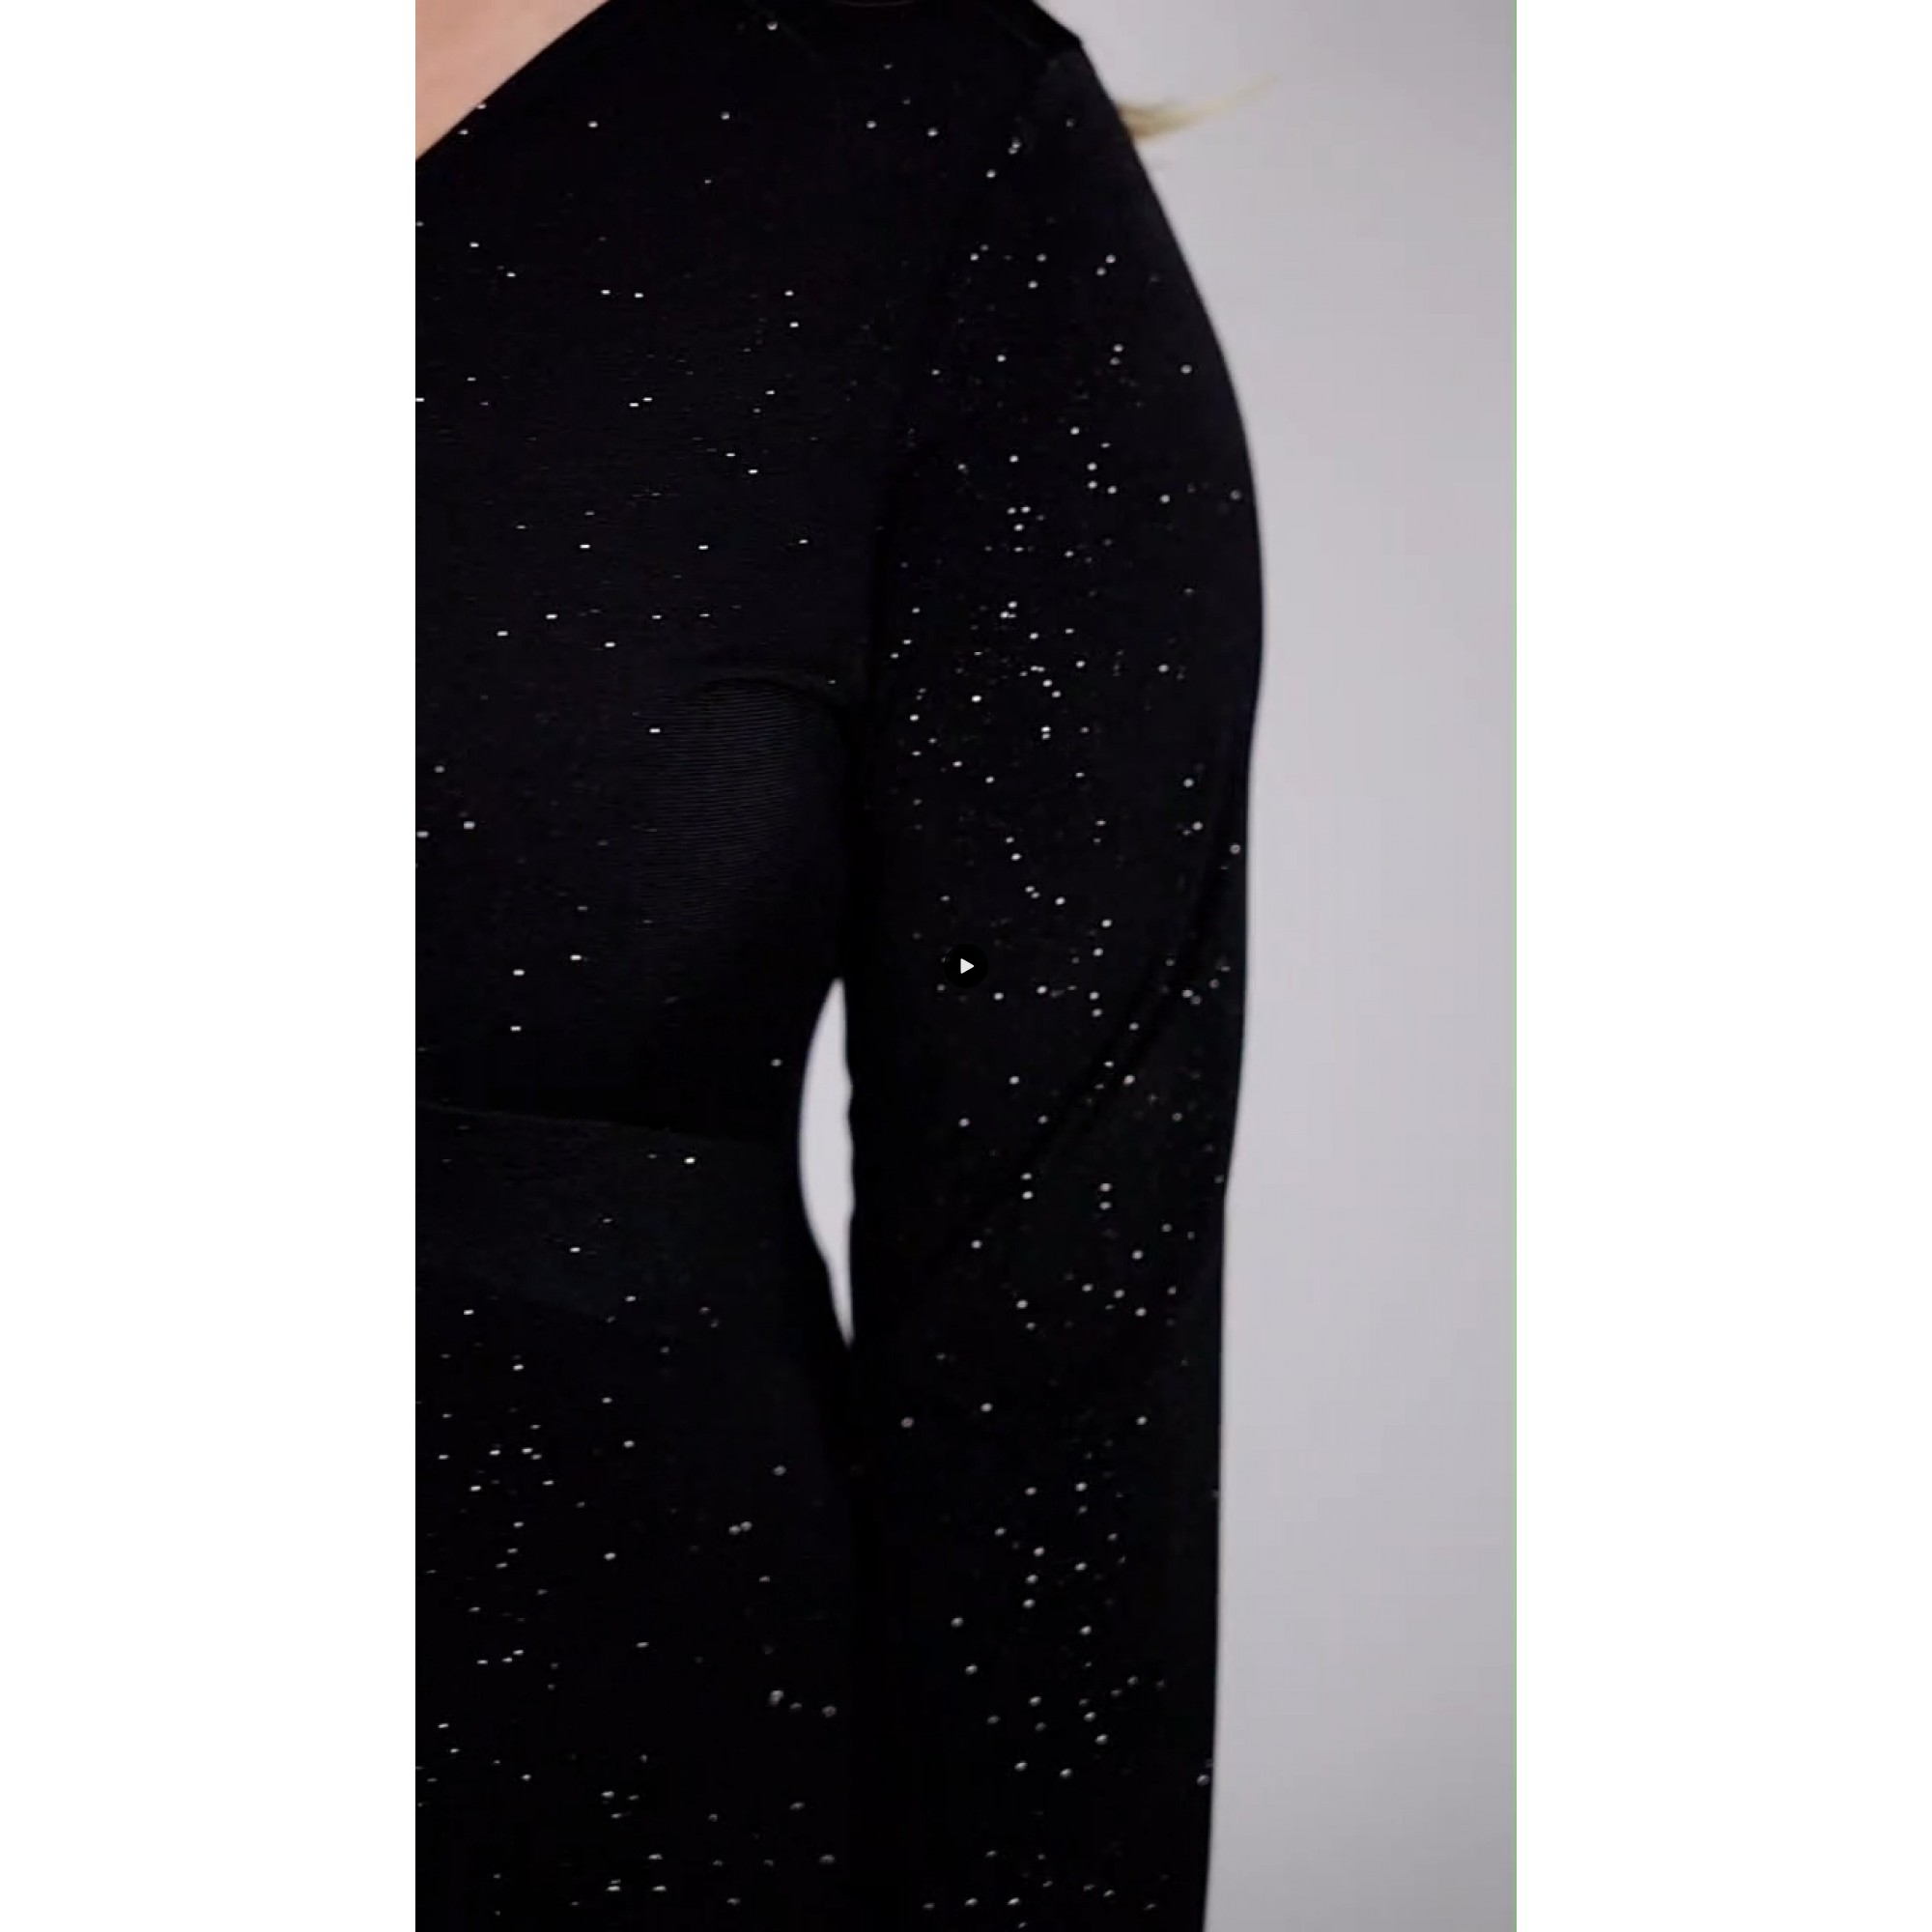  Φόρεμα gliter Super jersey μάξι μακρύ μανίκι κόμπος  μαύρο